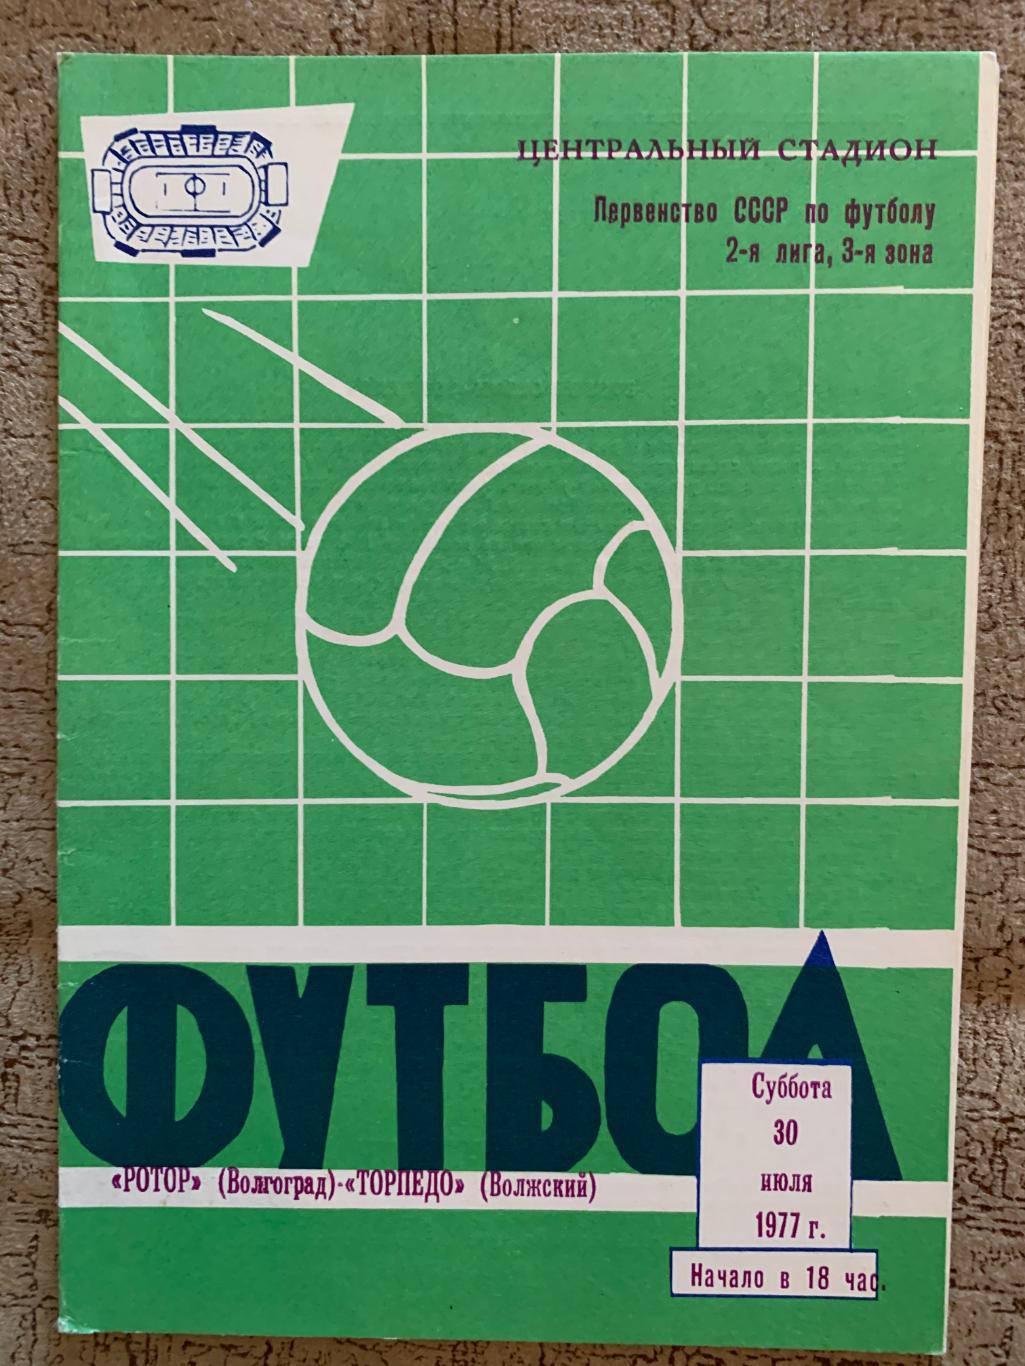 Ротор Волгоград - Торпедо Волжский 30.07.1977